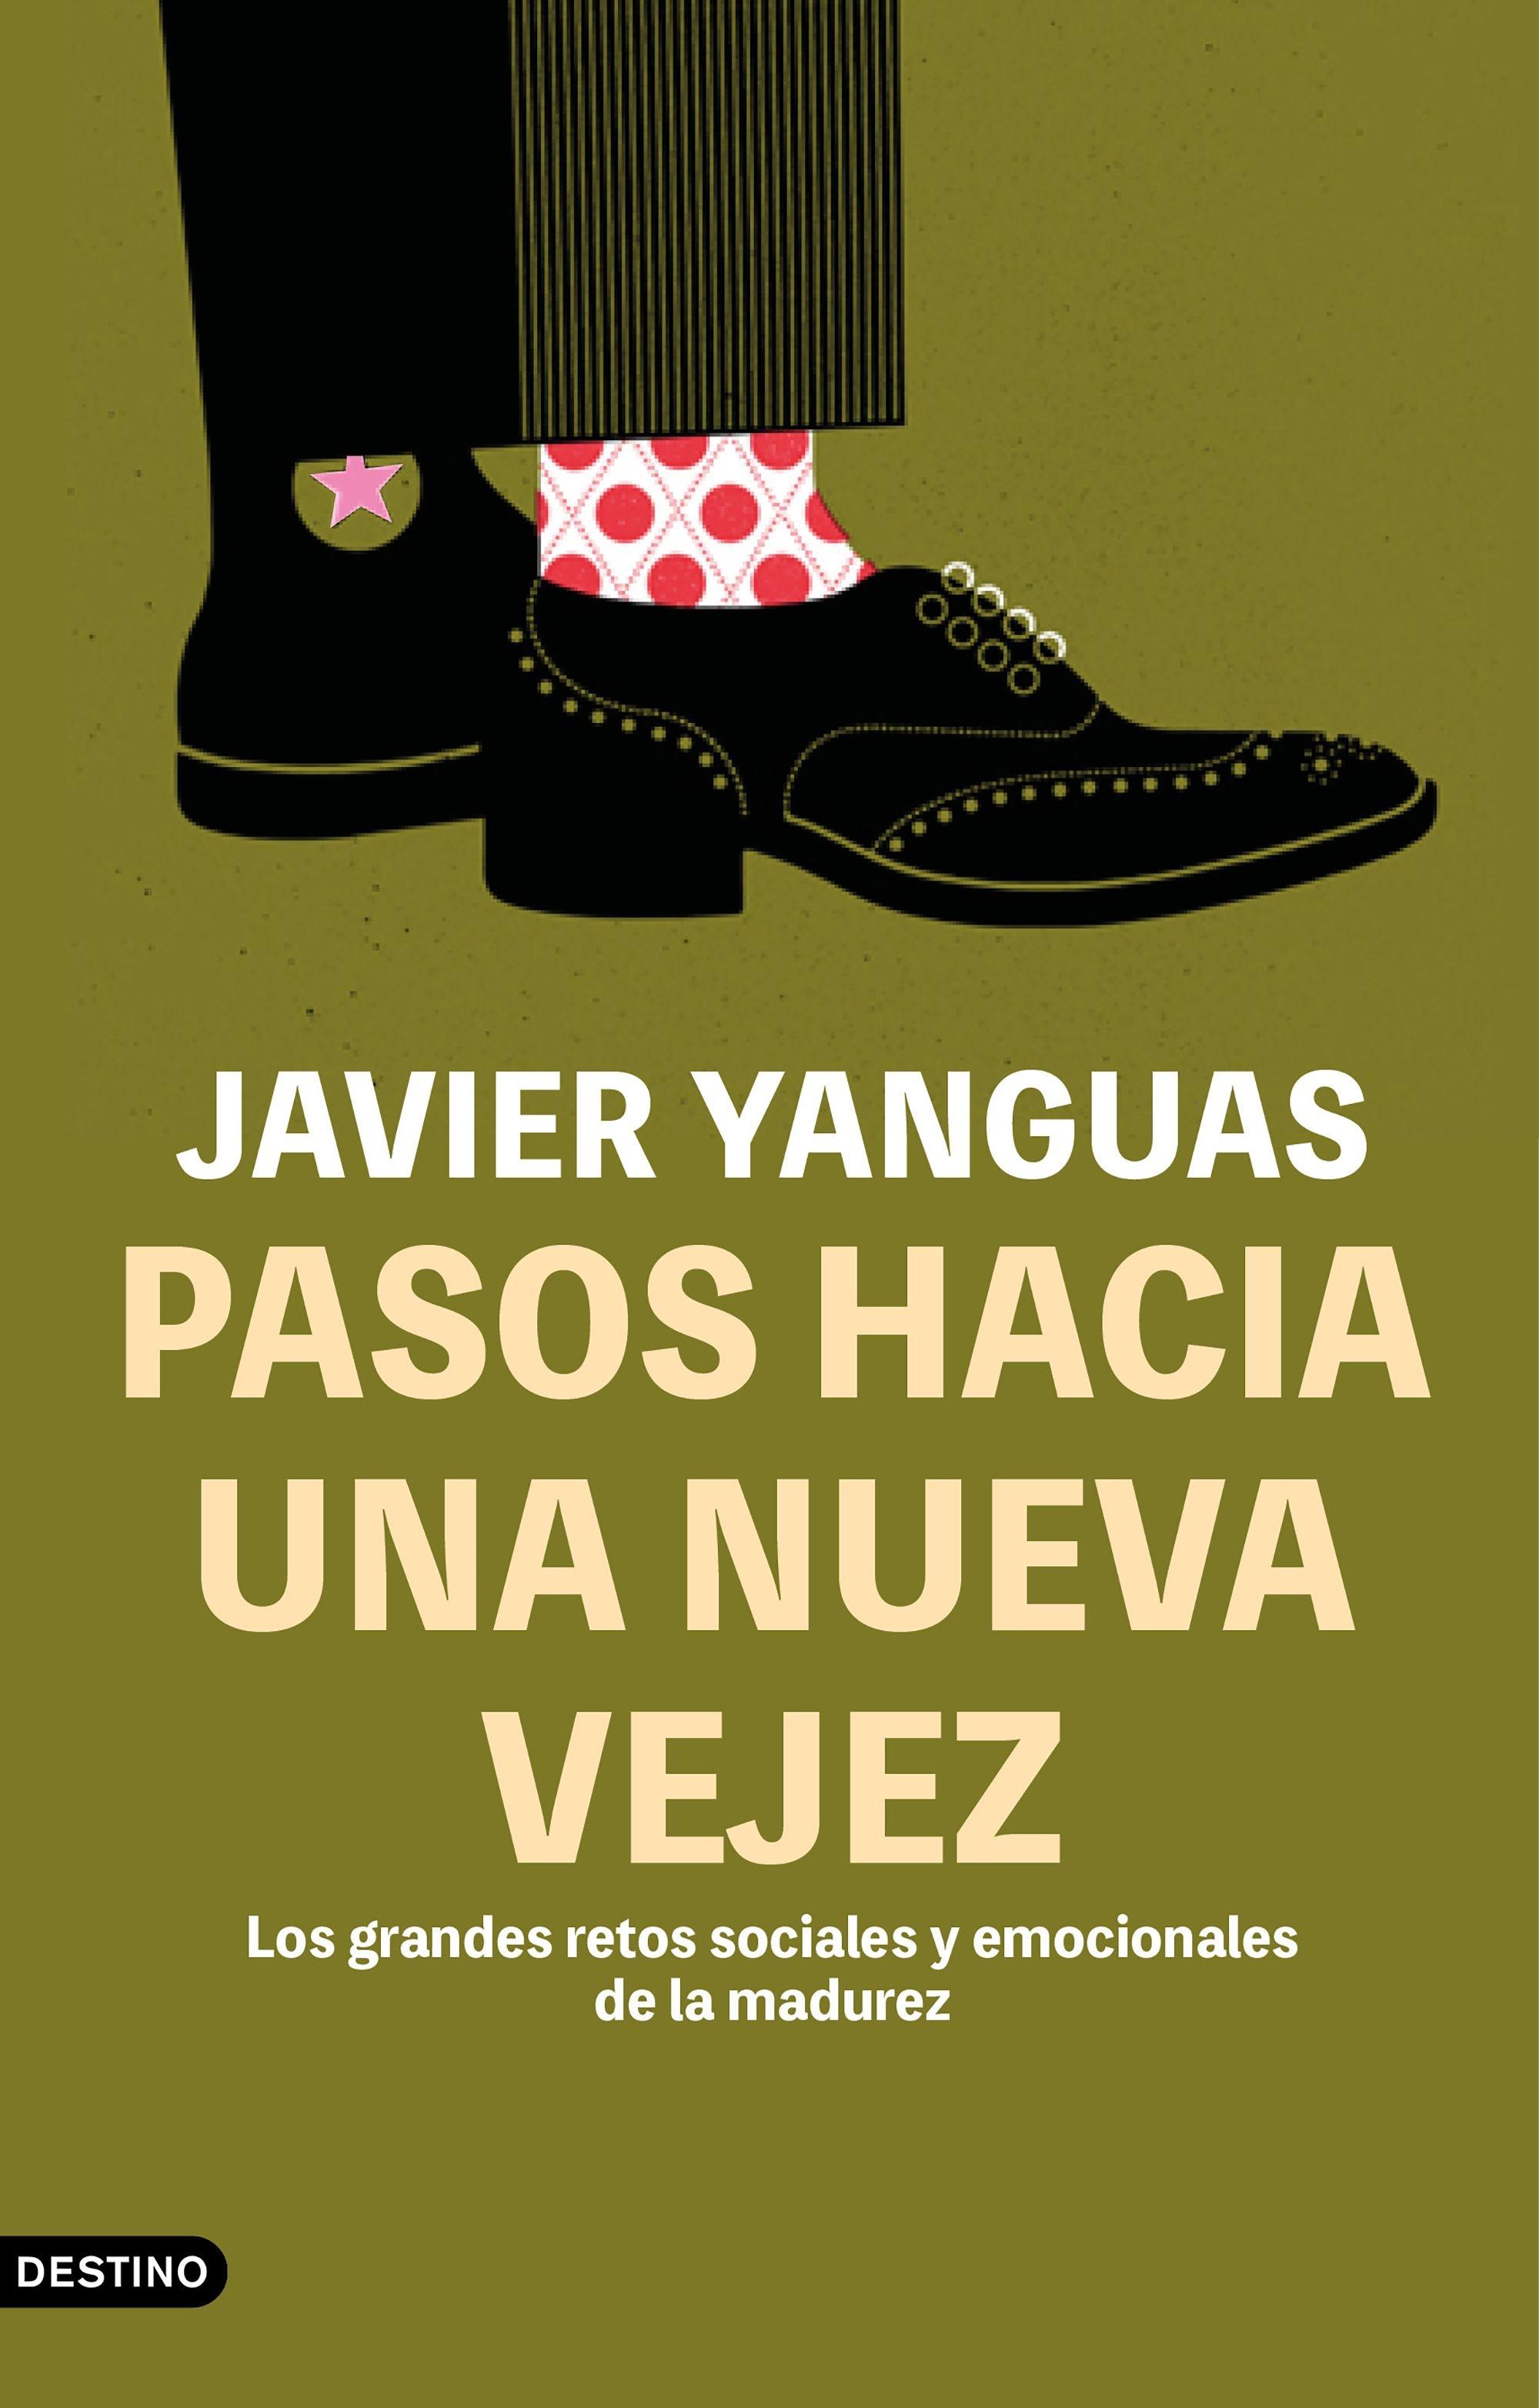 Pasos hacia una Nueva Vejez "Los Grandes Retos Sociales y Emocionales de la Madurez"